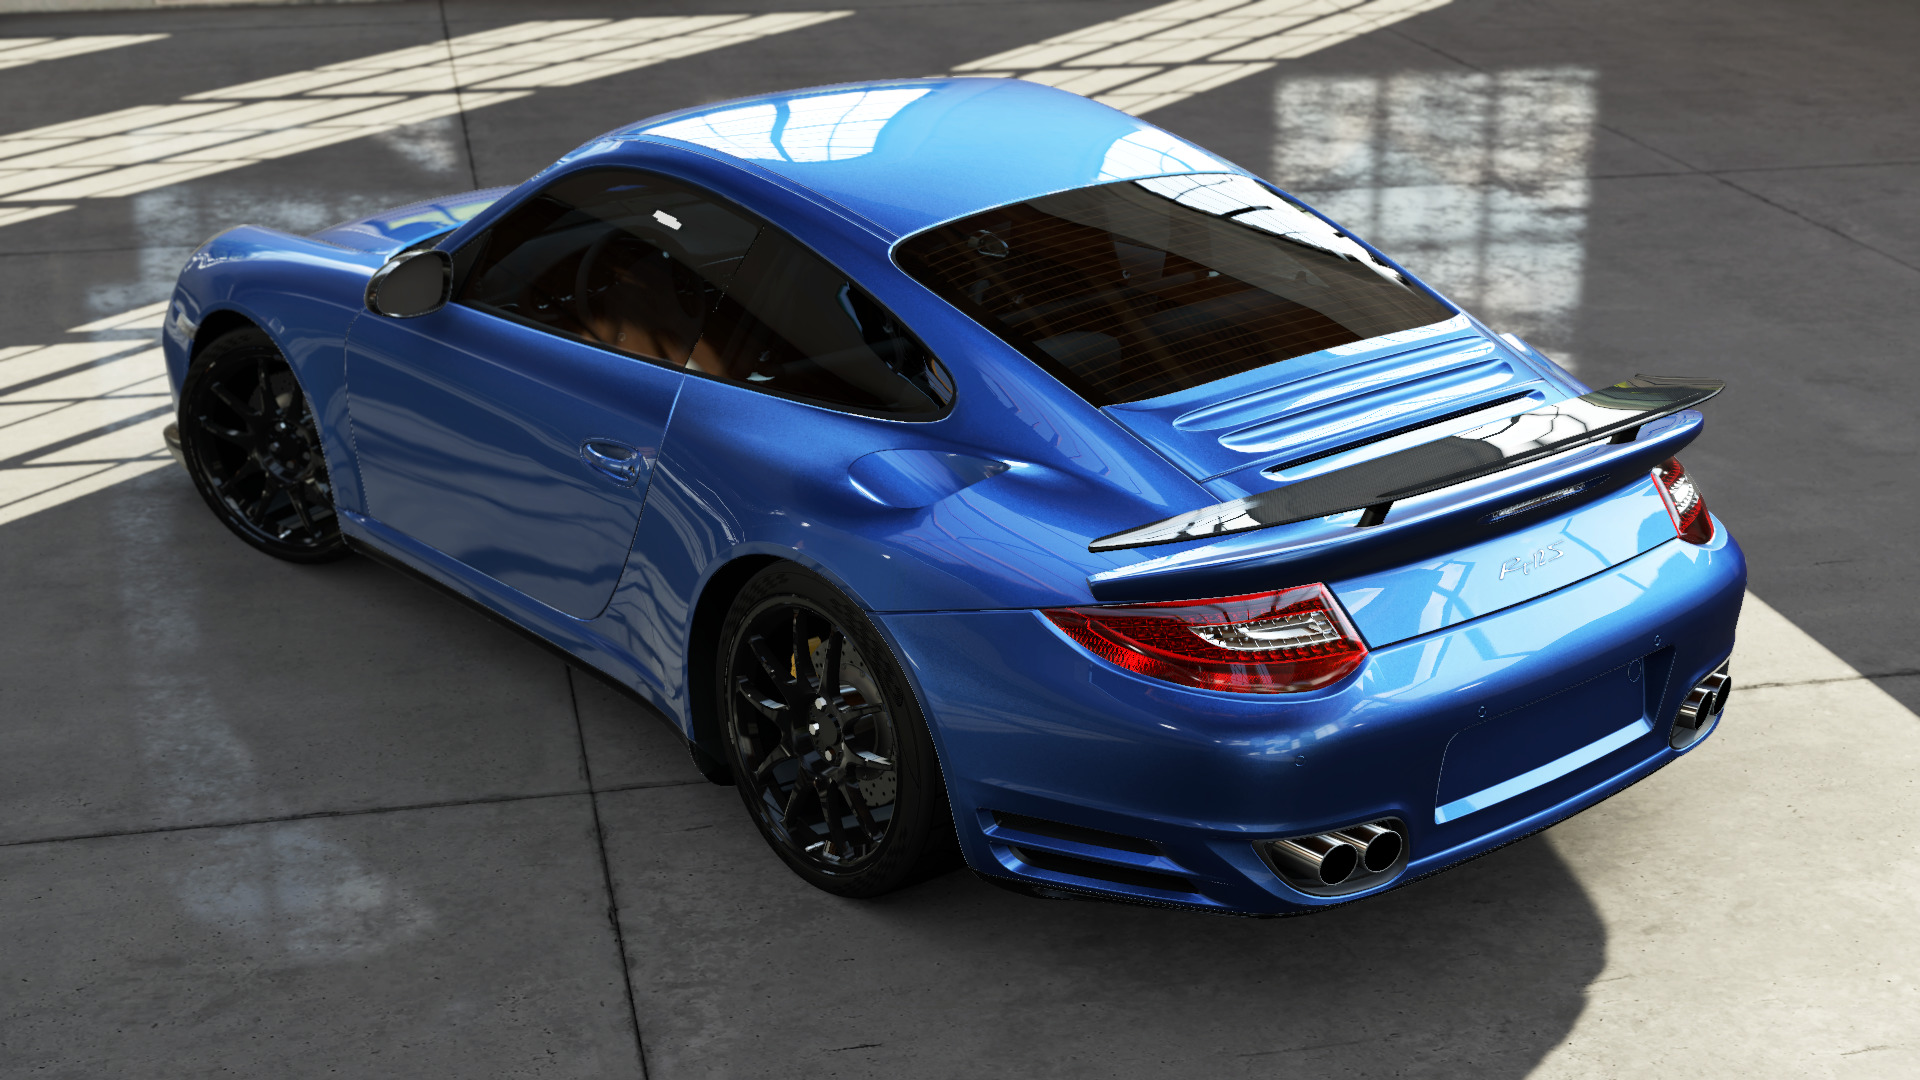 RUF, RUF Rt 12 S, Forza Motorsport 5, Car, Rims, Porsche, Blue Cars Wallpaper